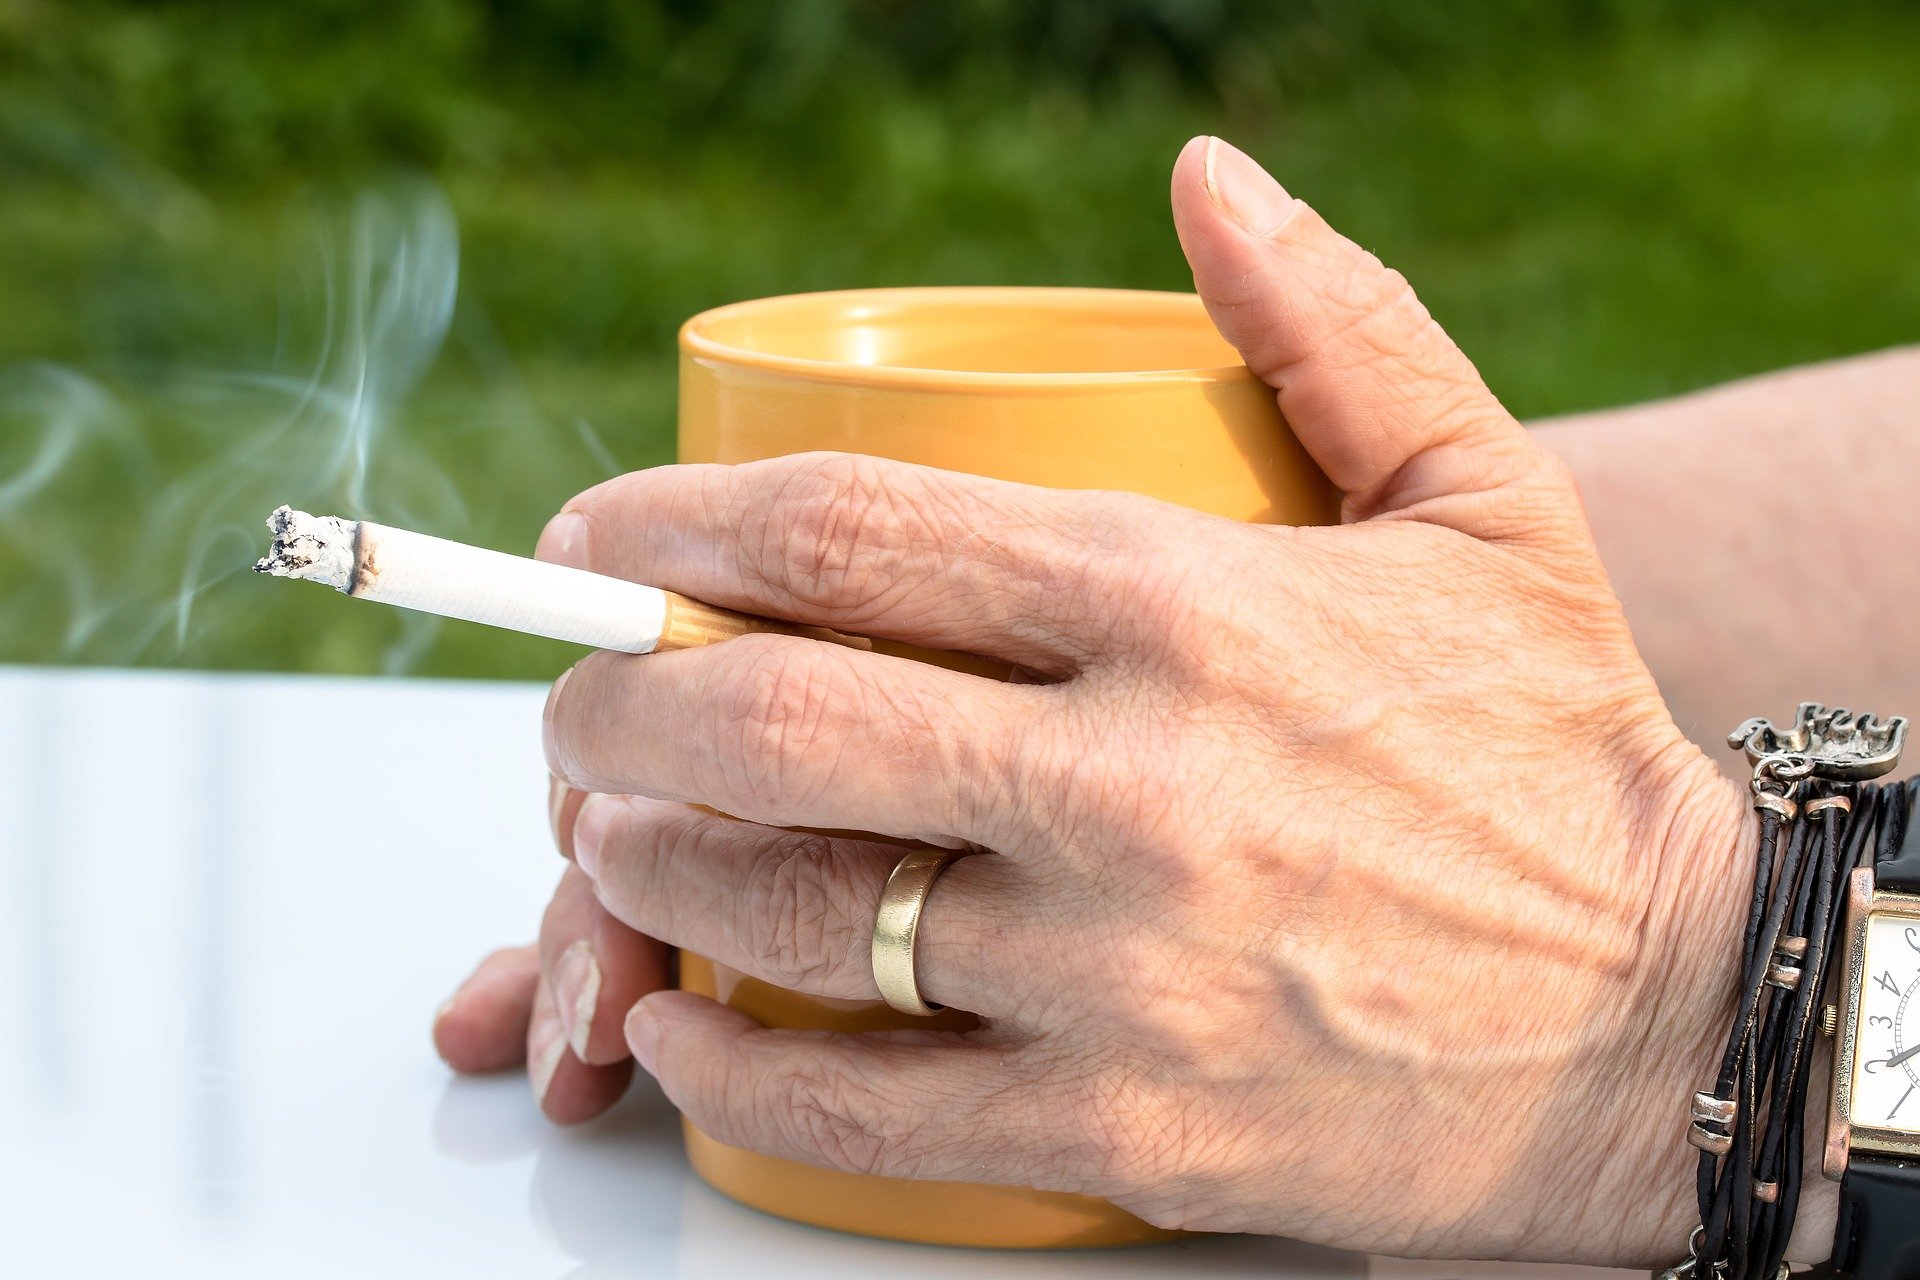 cigarette 2367456 1920.jpg?resize=1200,630 - Il n'est jamais trop tard pour arrêter de fumer : Selon une étude, les tissus pulmonaires pourraient redevenir normaux !